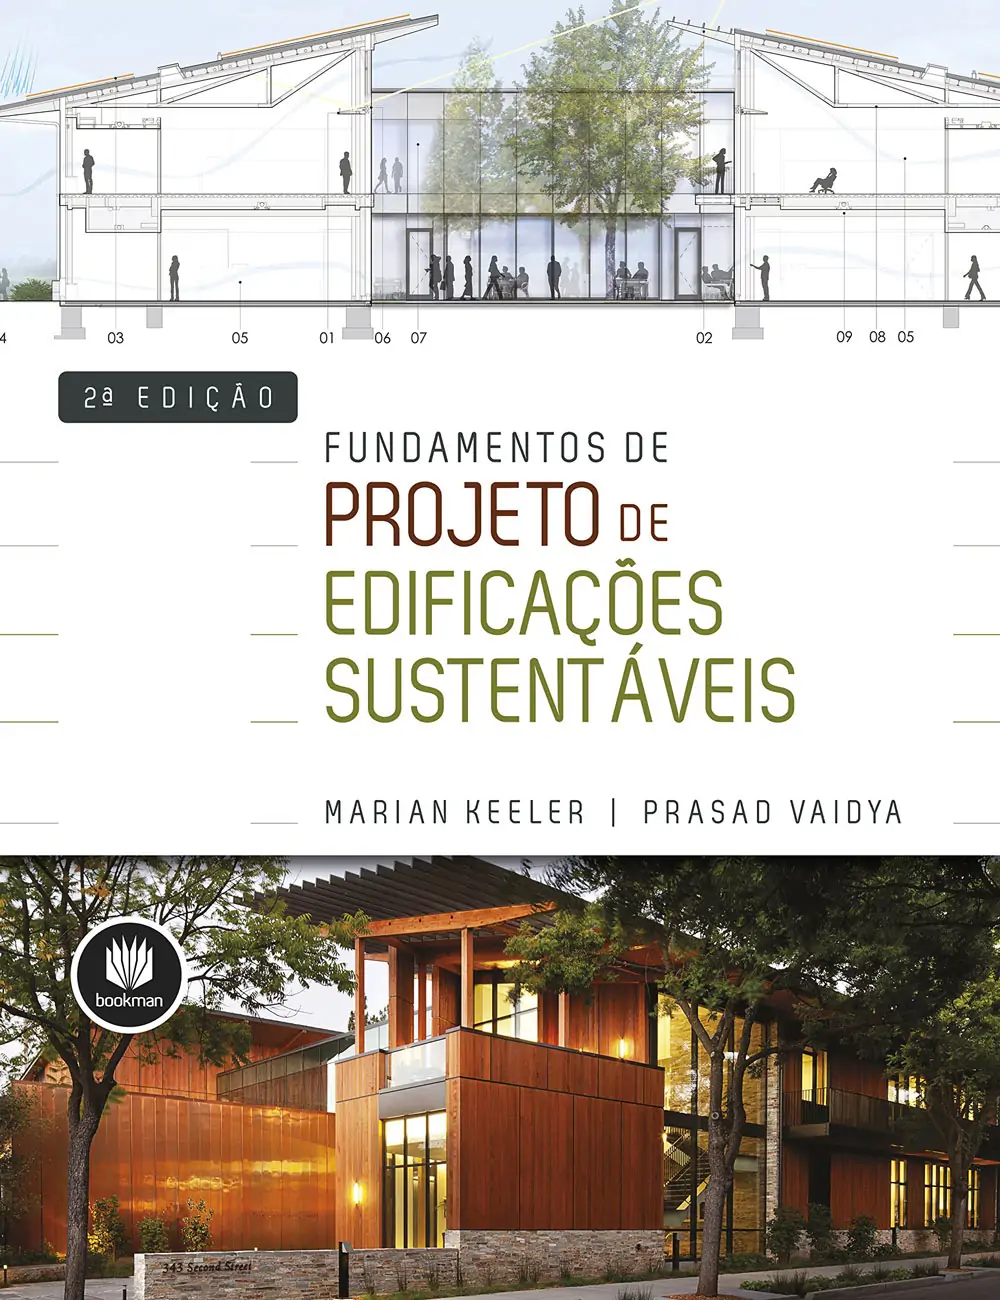 Fundamentos de Projeto de Edificações Sustentáveis - Marian Keeler, Prasad Vaidya, Alexandre Salvaterra